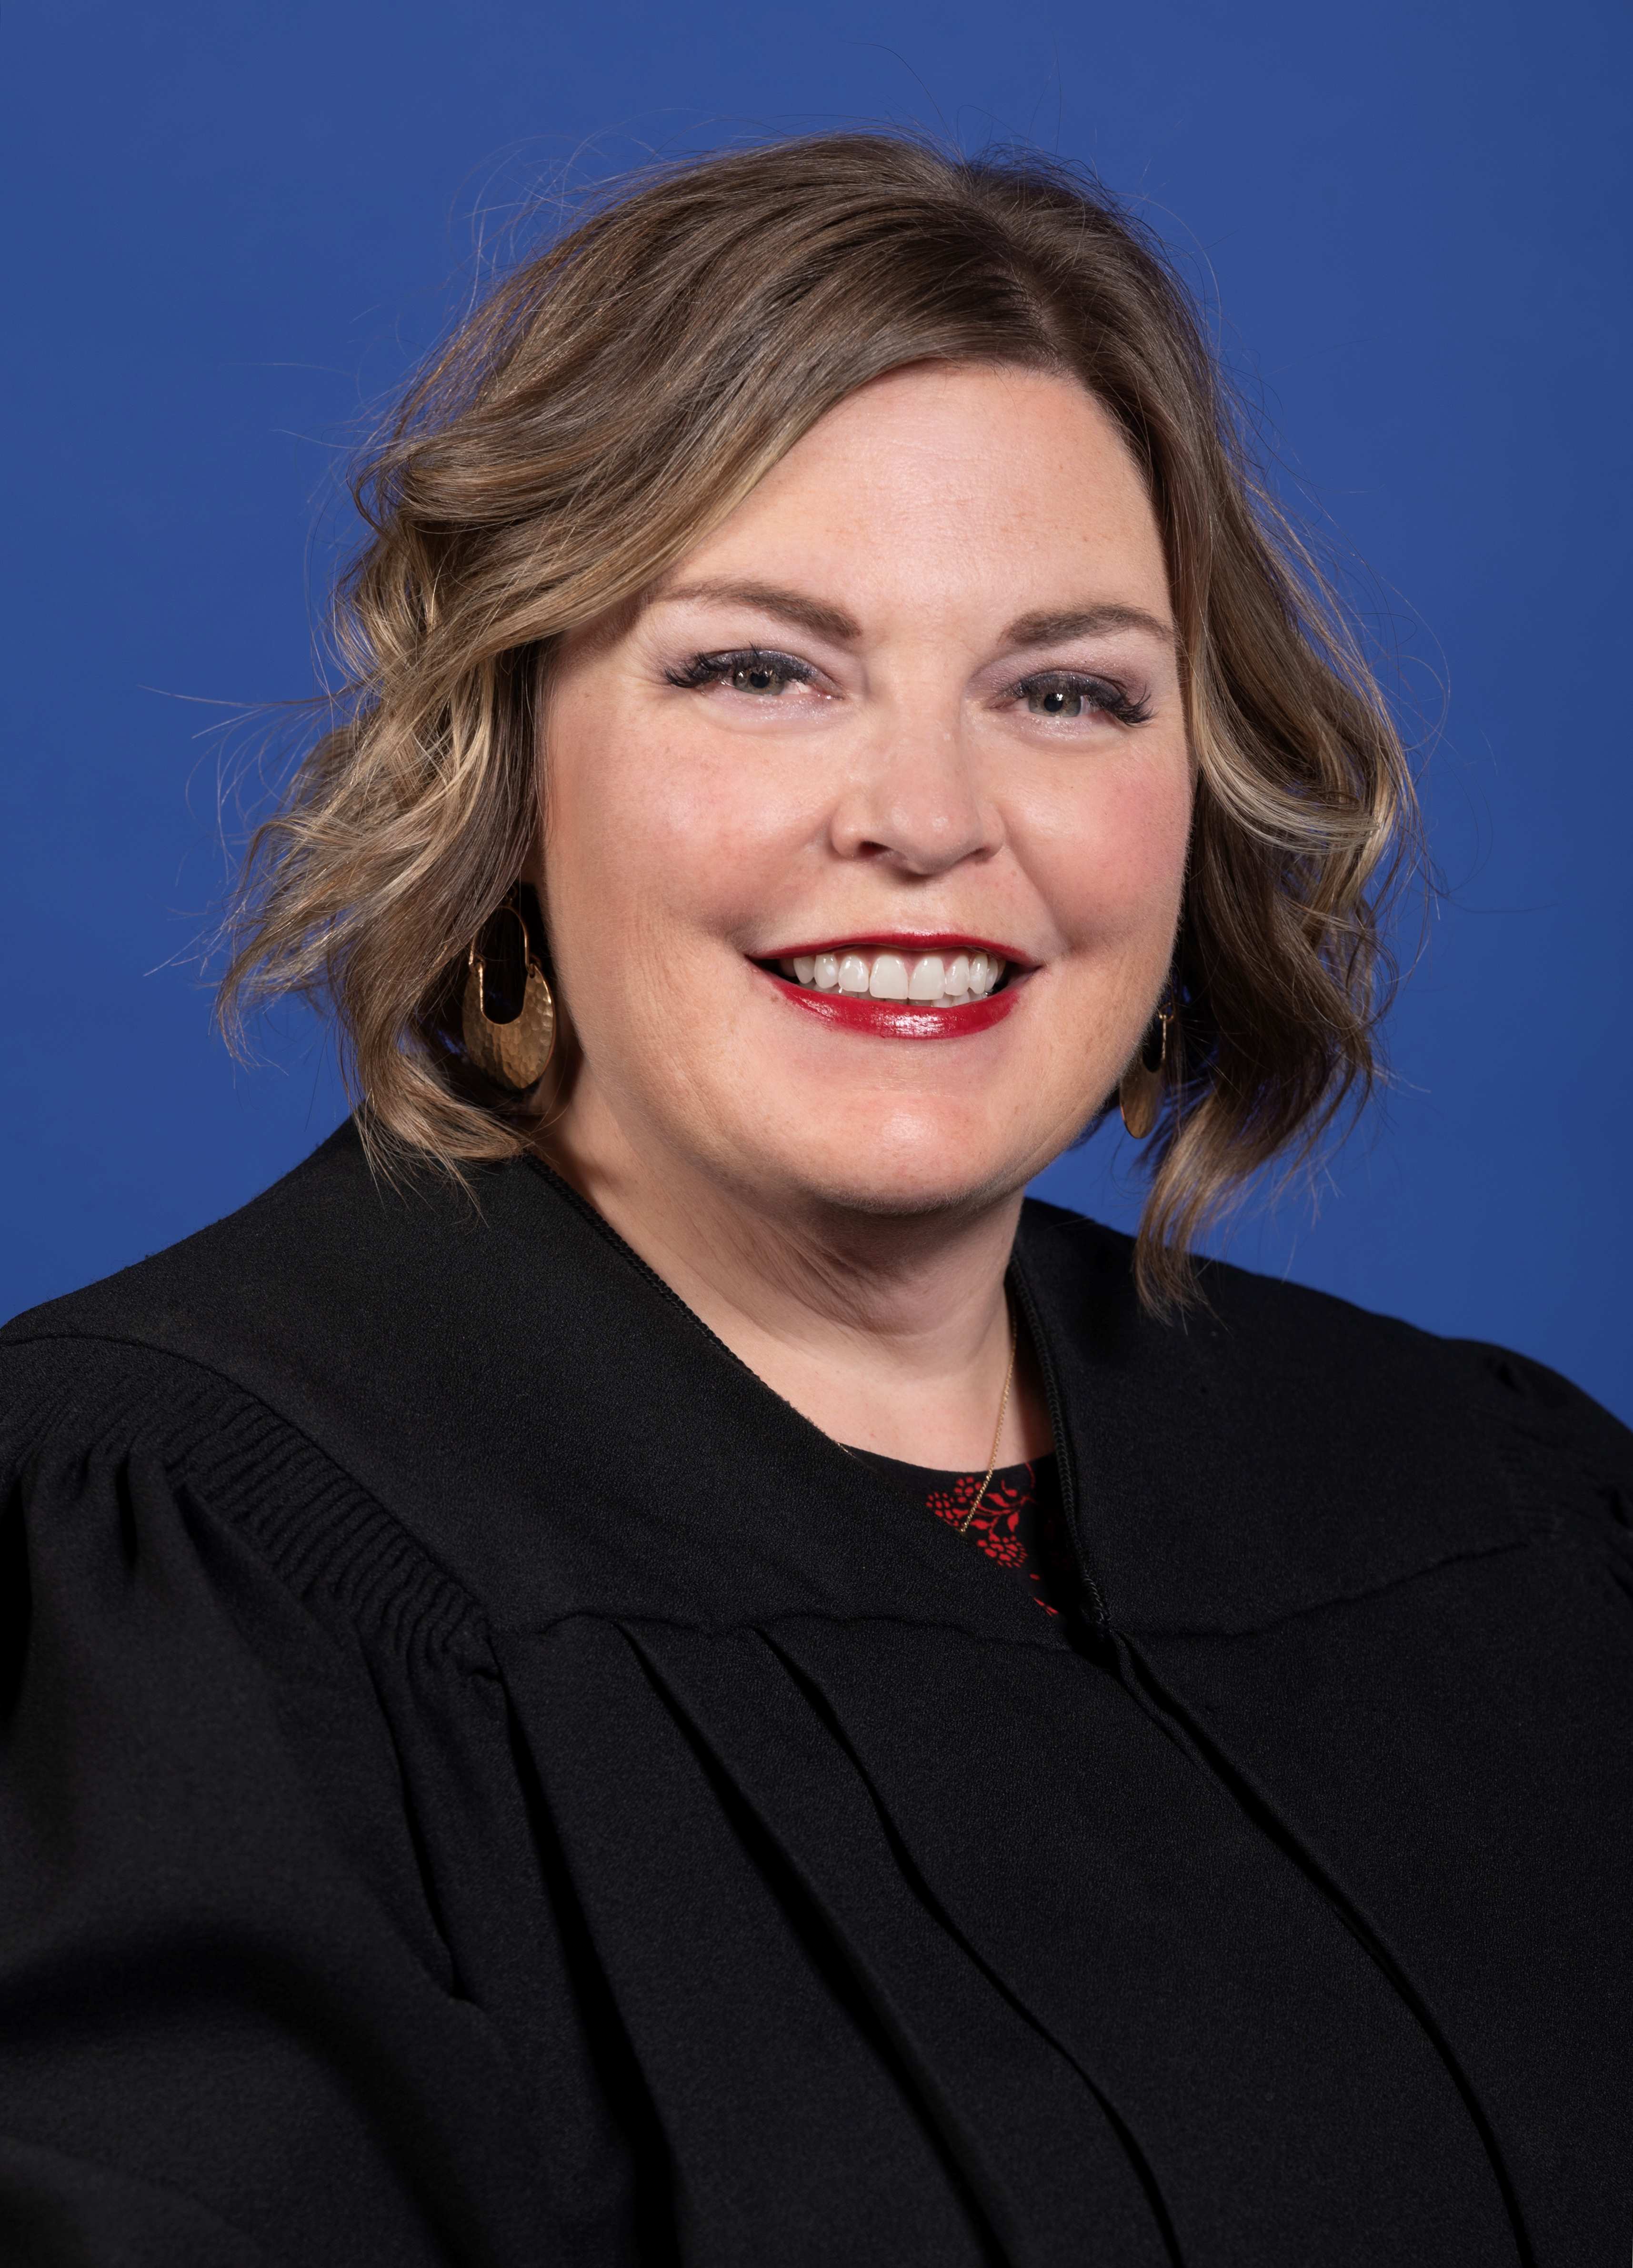 Judge Amanda B. Dunn